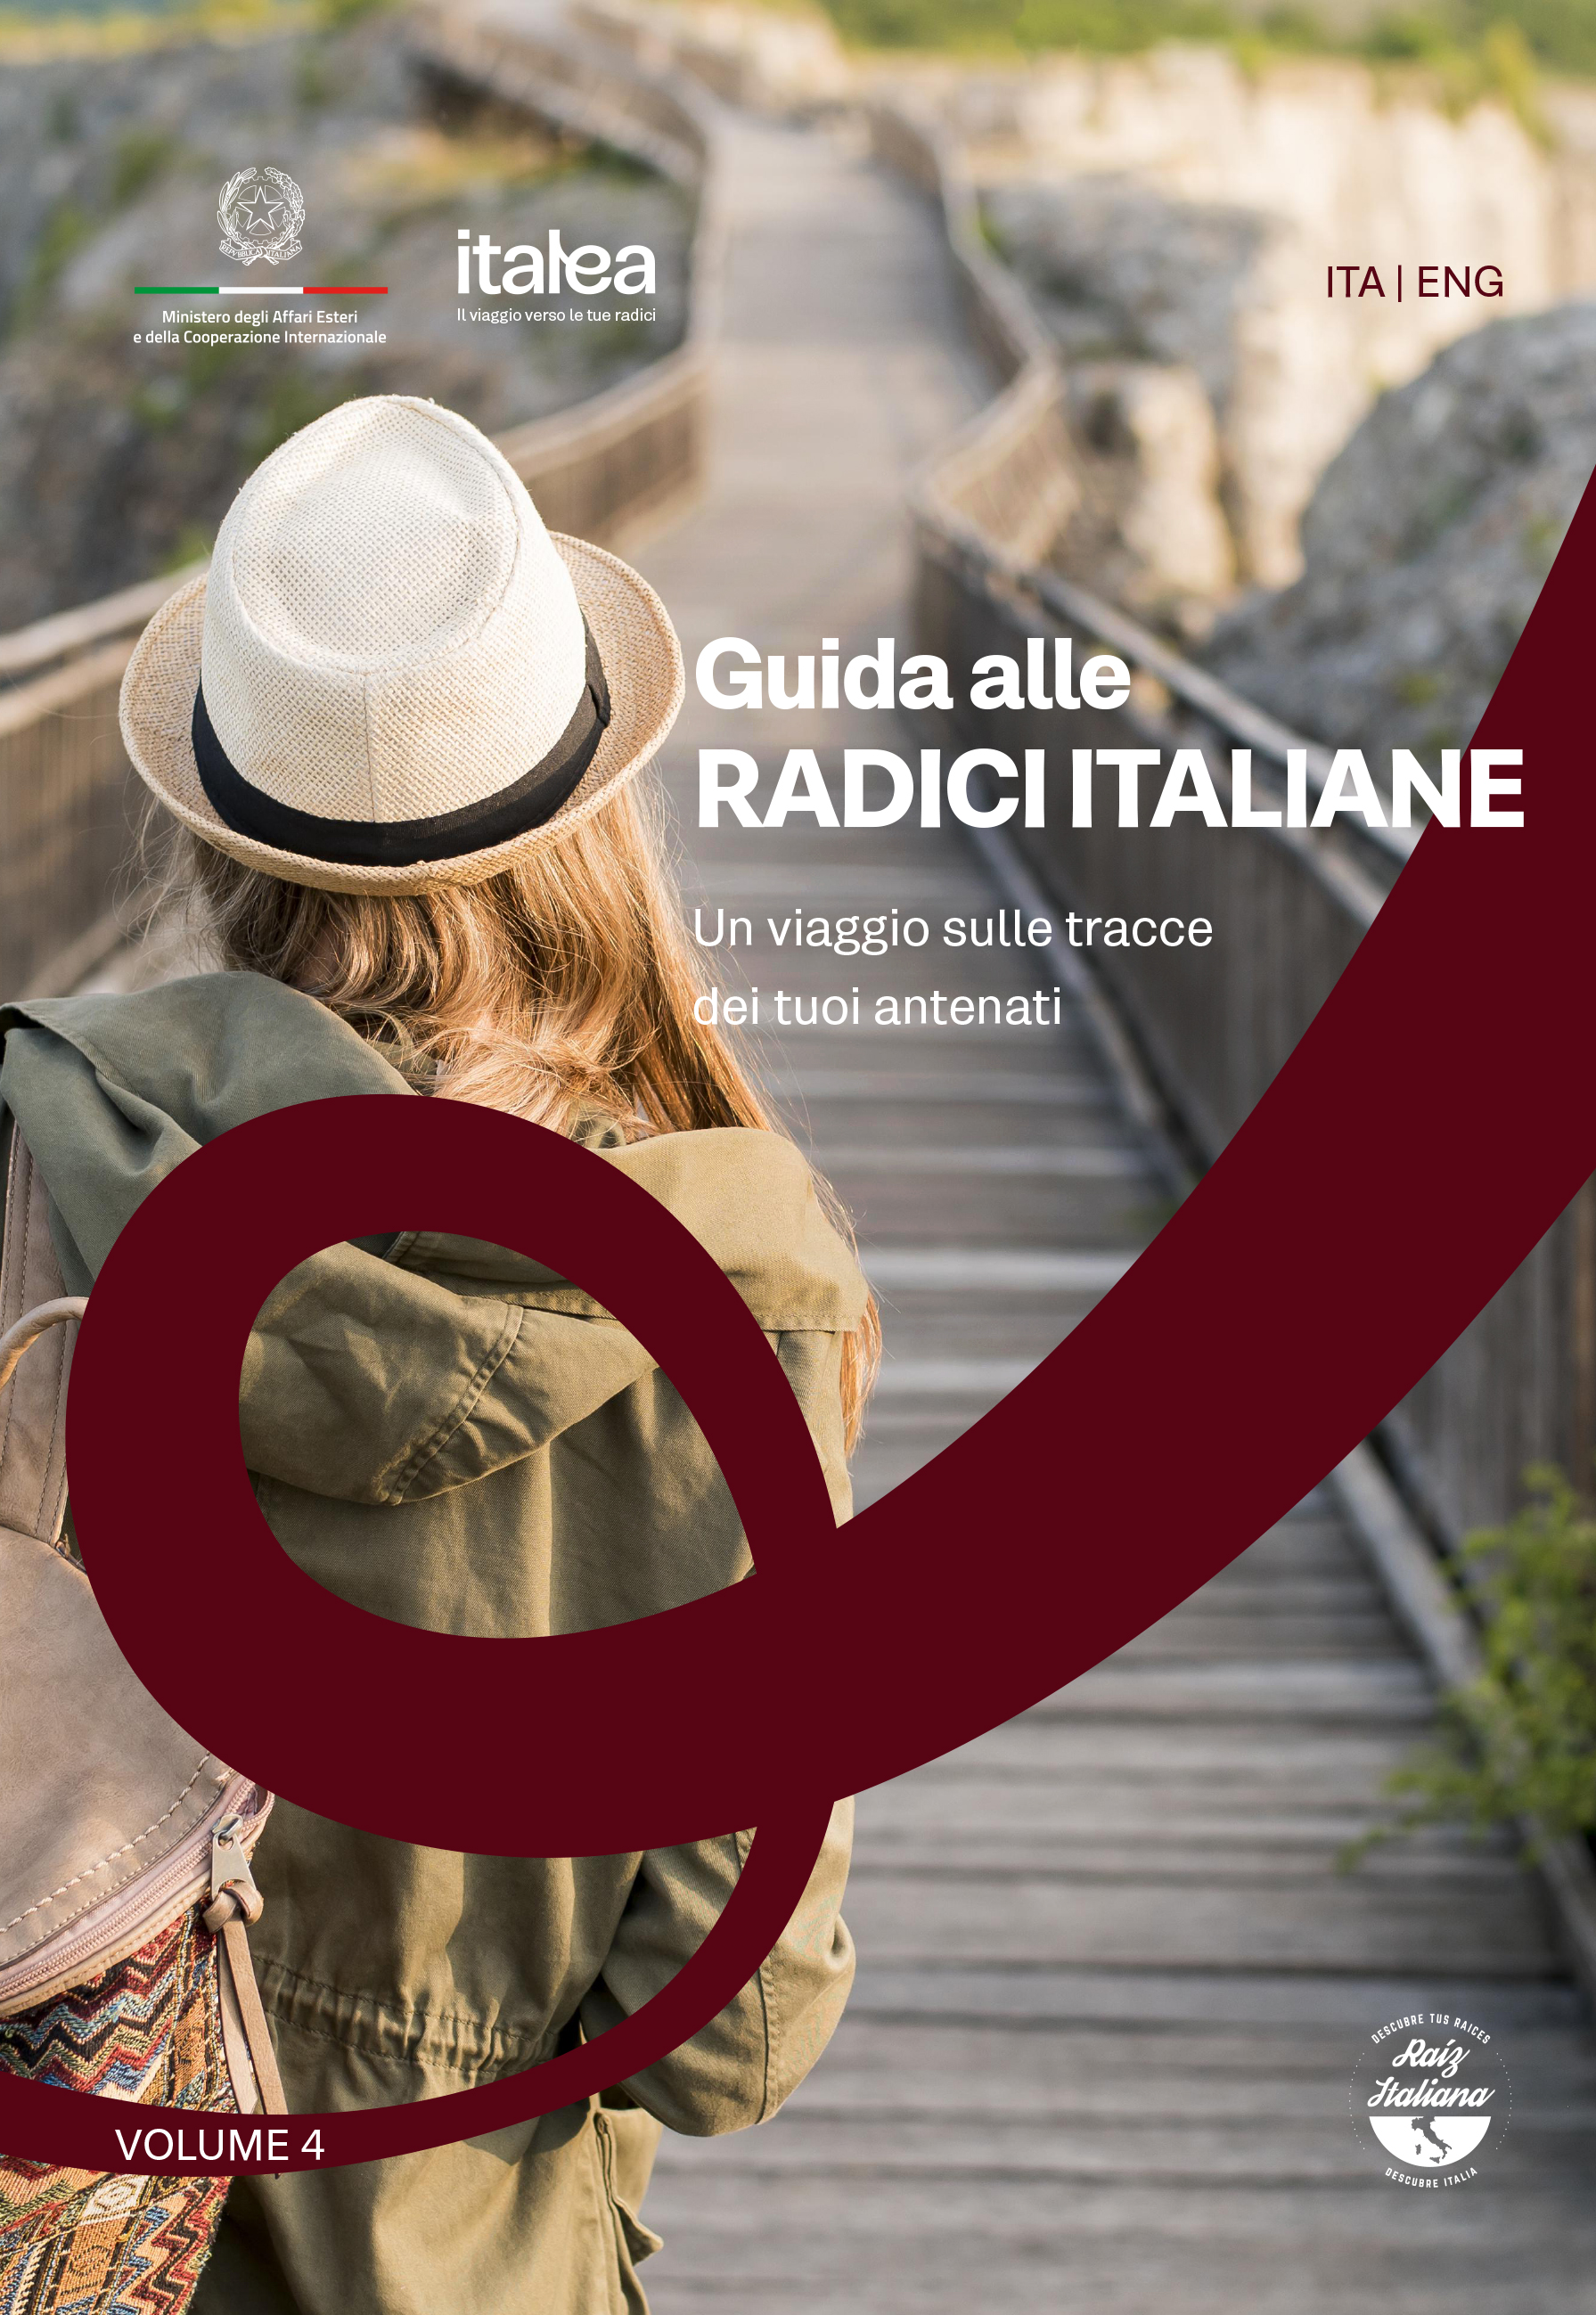 Guida alle radici italiane: un viaggio sulle tracce dei tuoi antenati